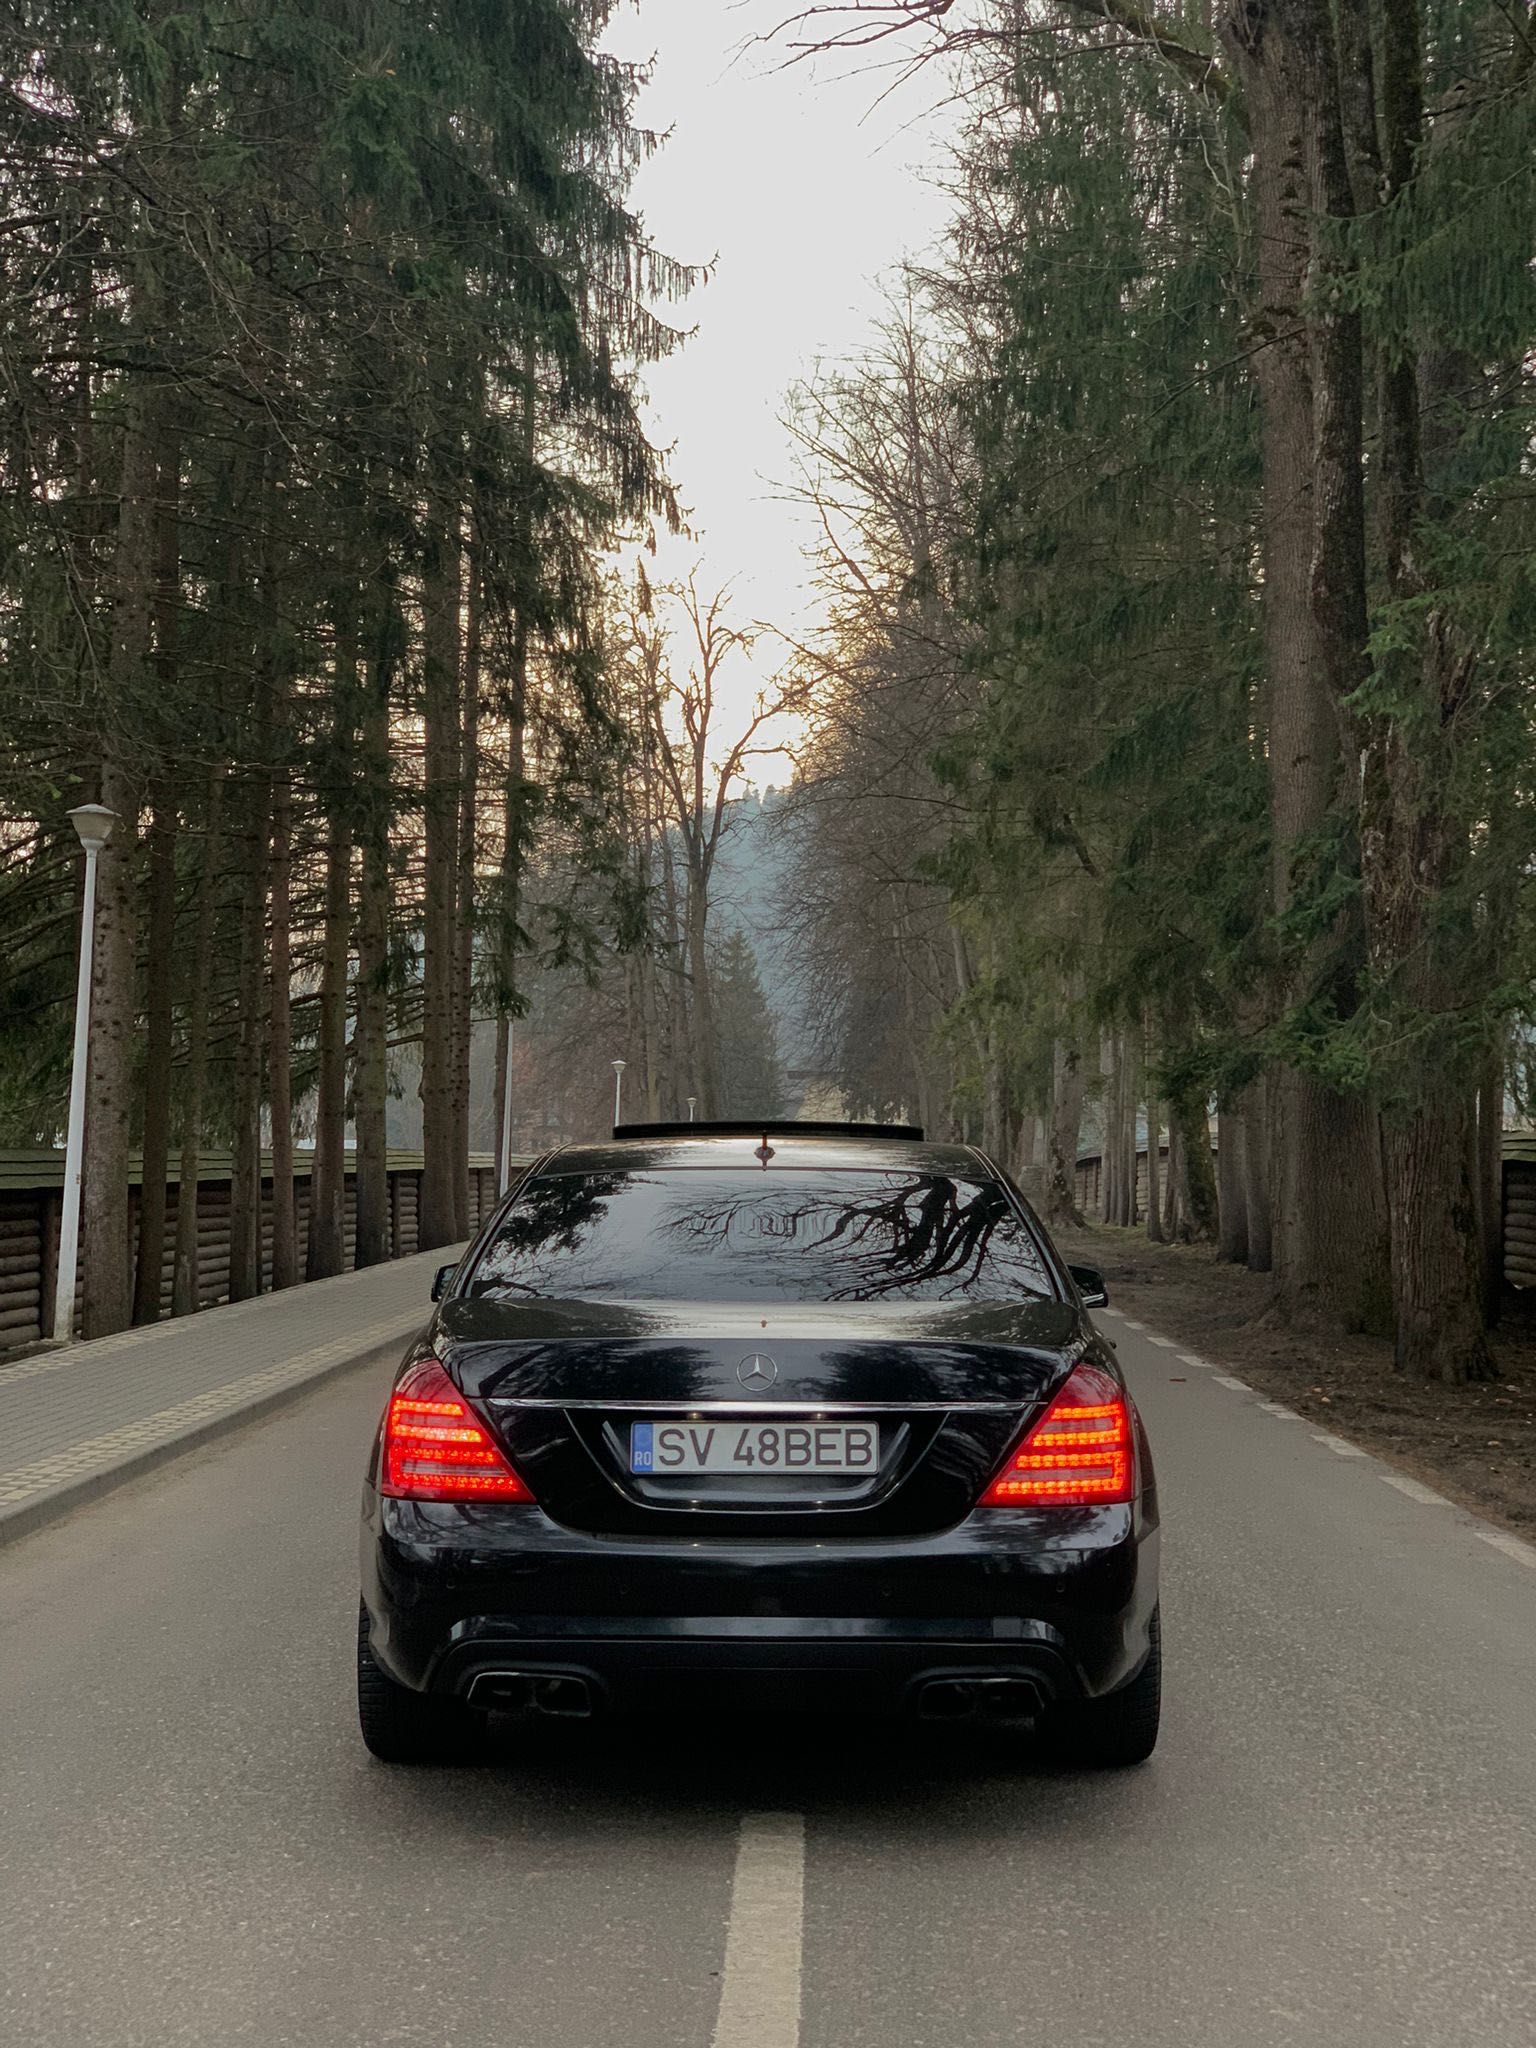 Mercedes S class